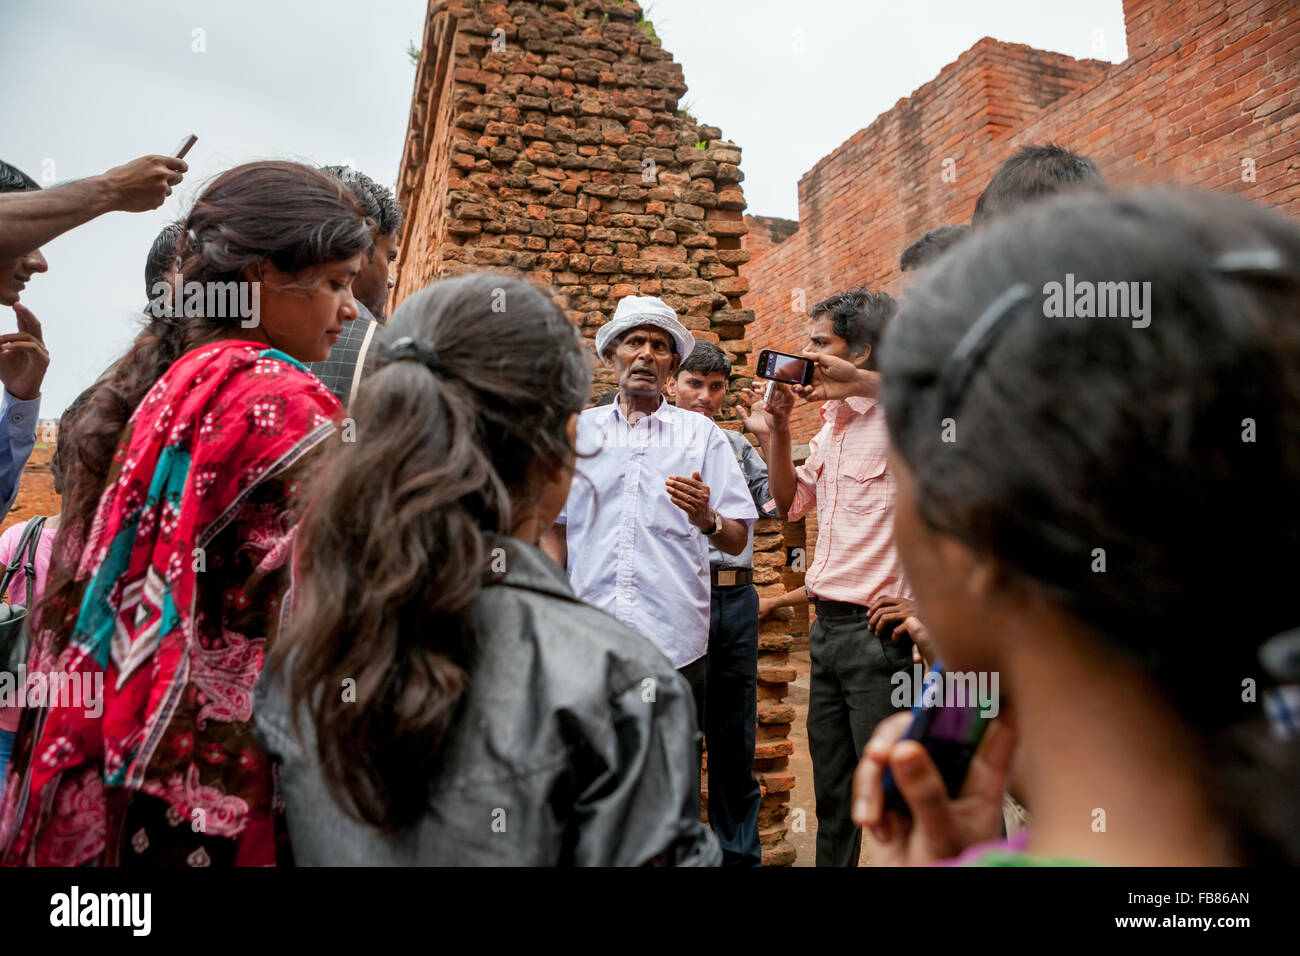 Les étudiants de l'université sont expliqués par un guide car ils visitent l'ancien complexe universitaire bouddhiste de Nalanda à Nalanda, Bihar, Inde. Banque D'Images